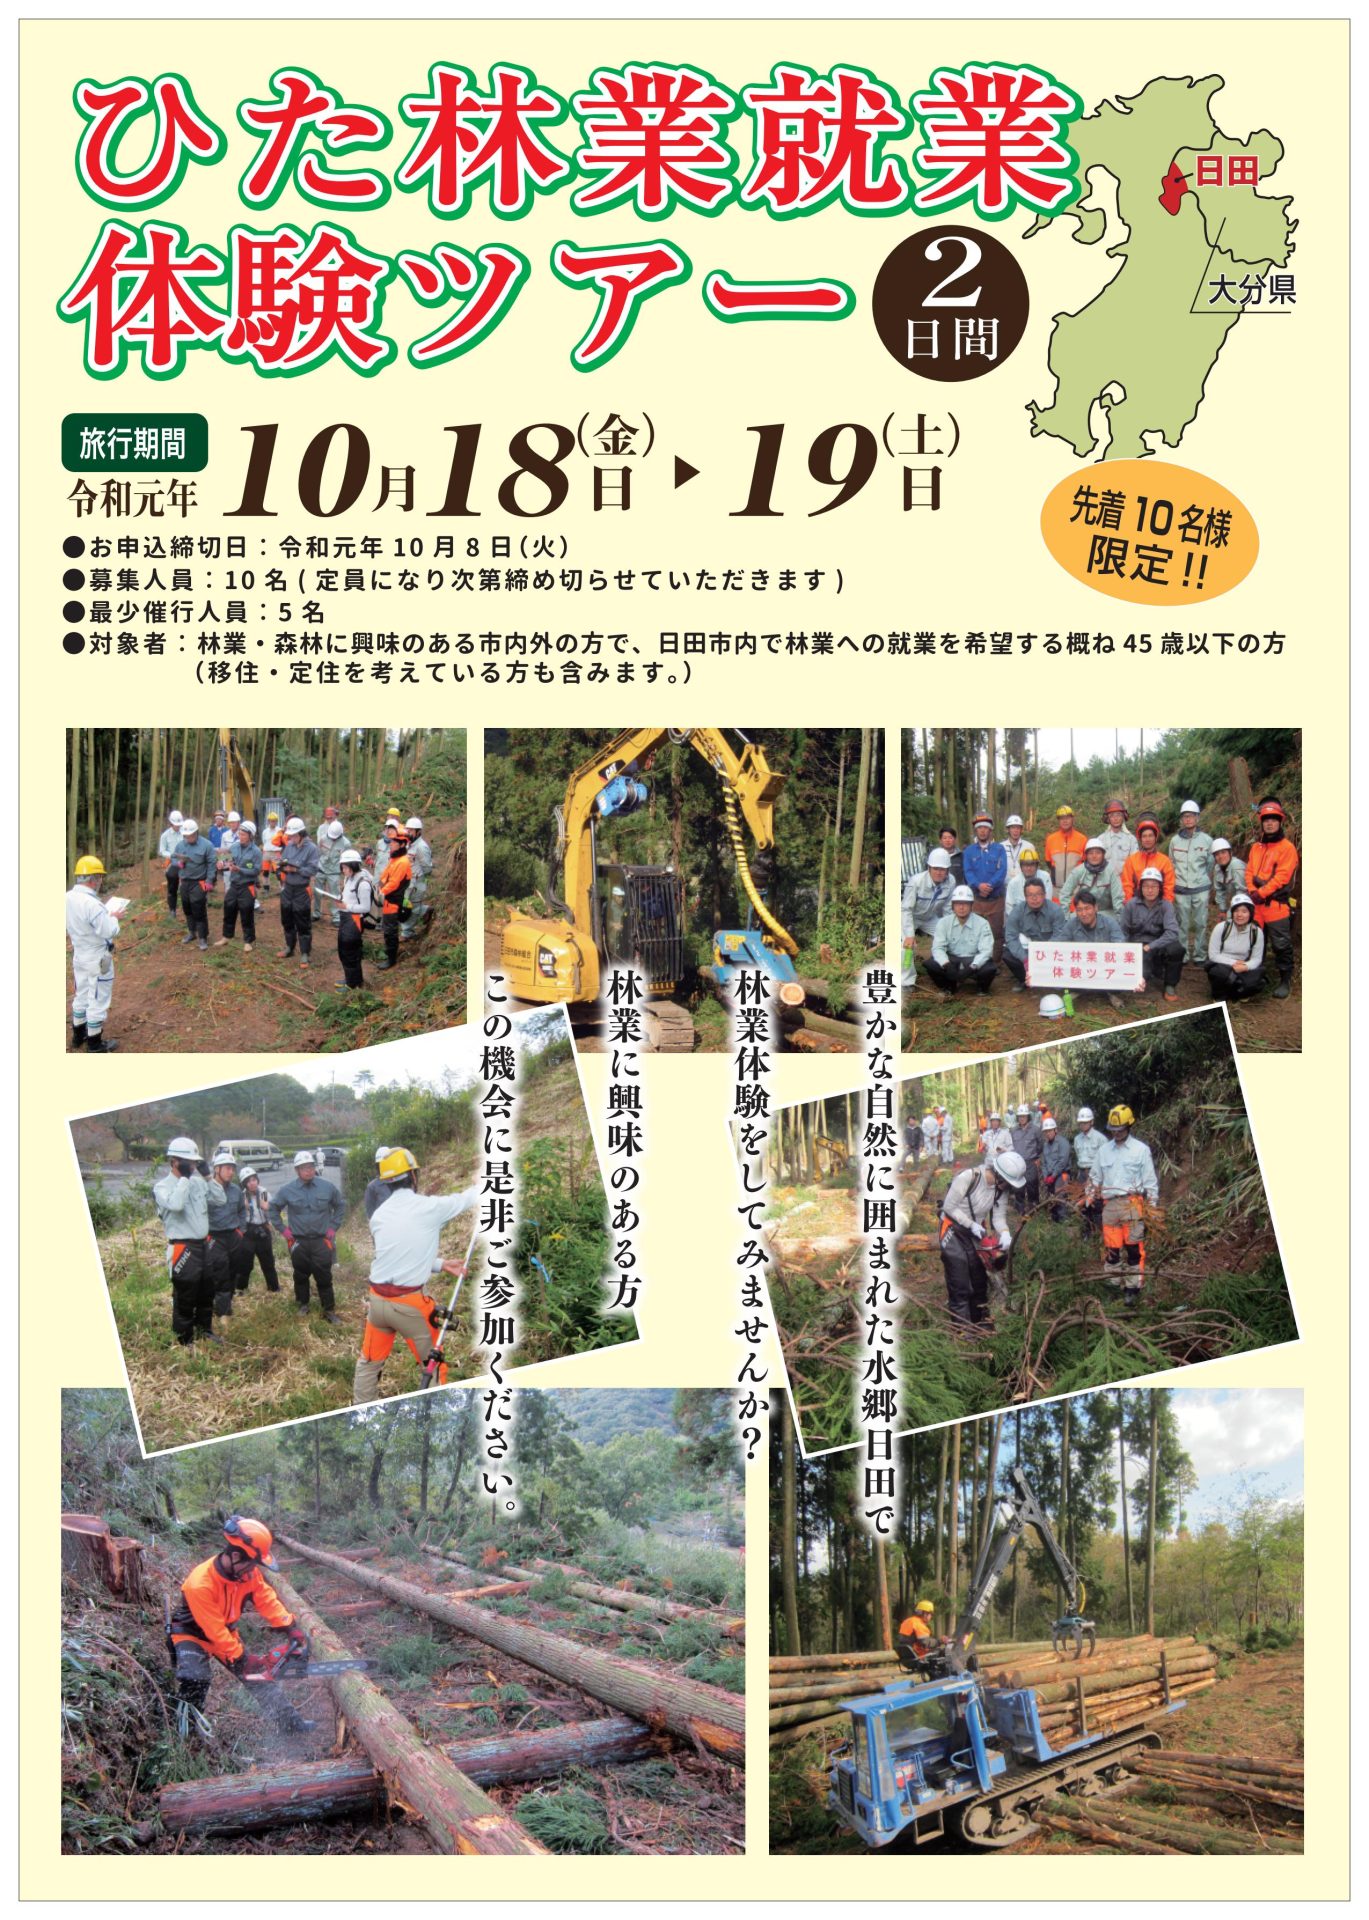 【日田市】ひた林業就業体験ツアー | 移住関連イベント情報